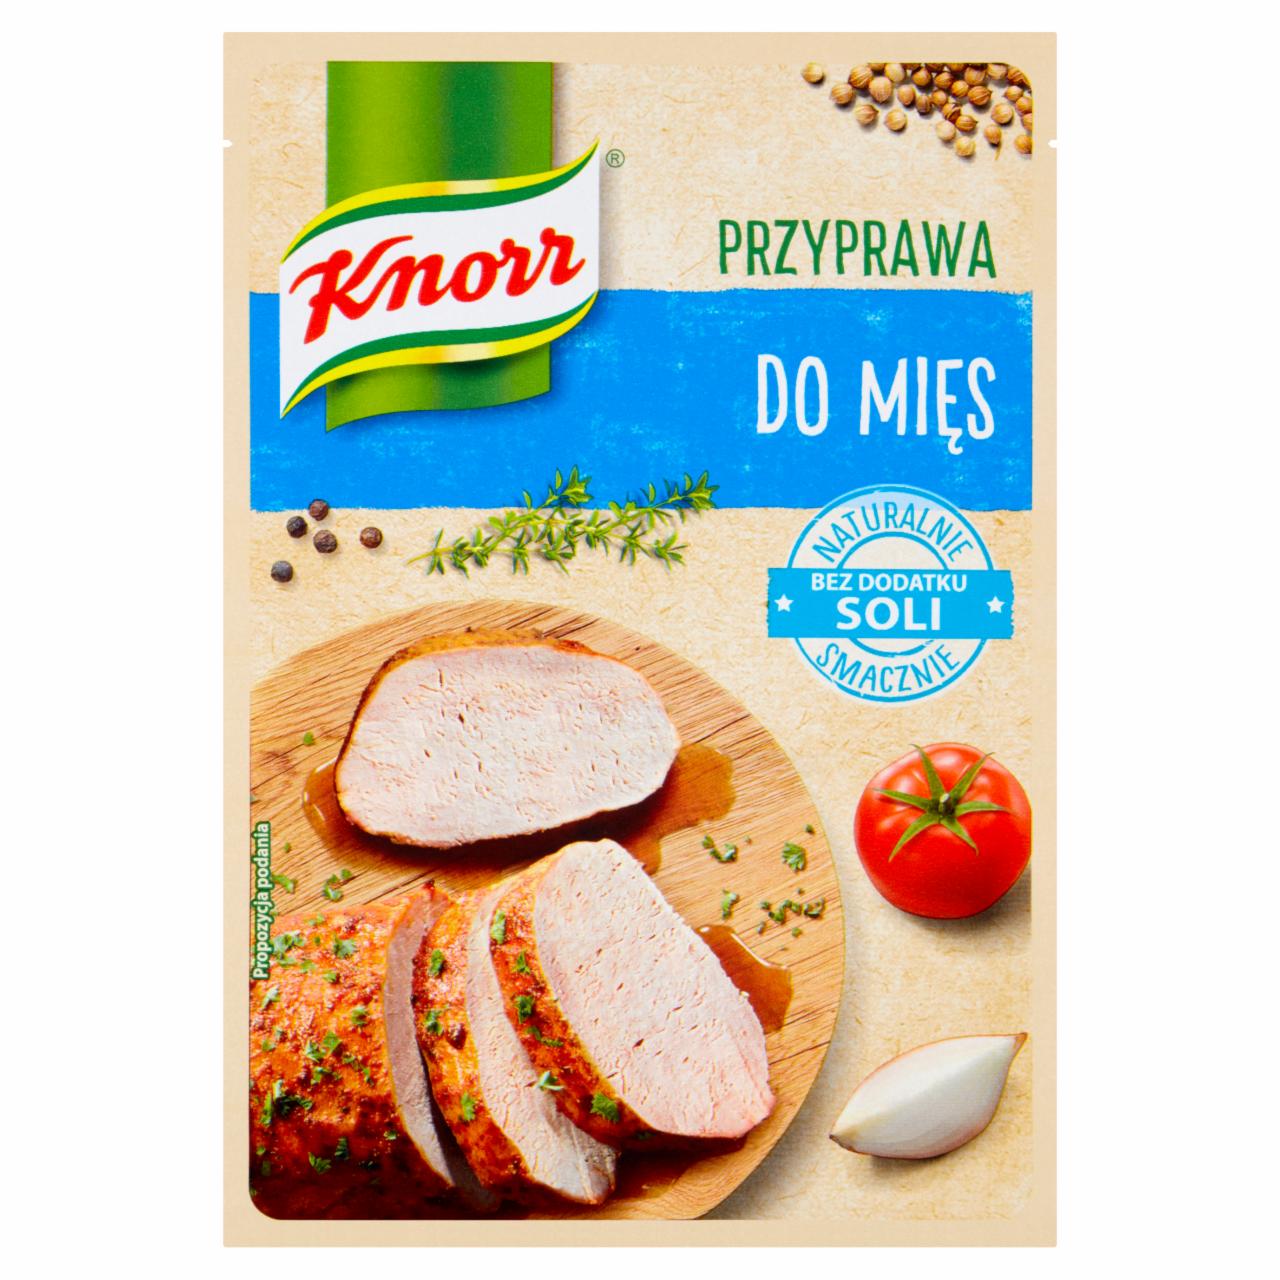 Zdjęcia - Knorr Przyprawa do mięs 18 g